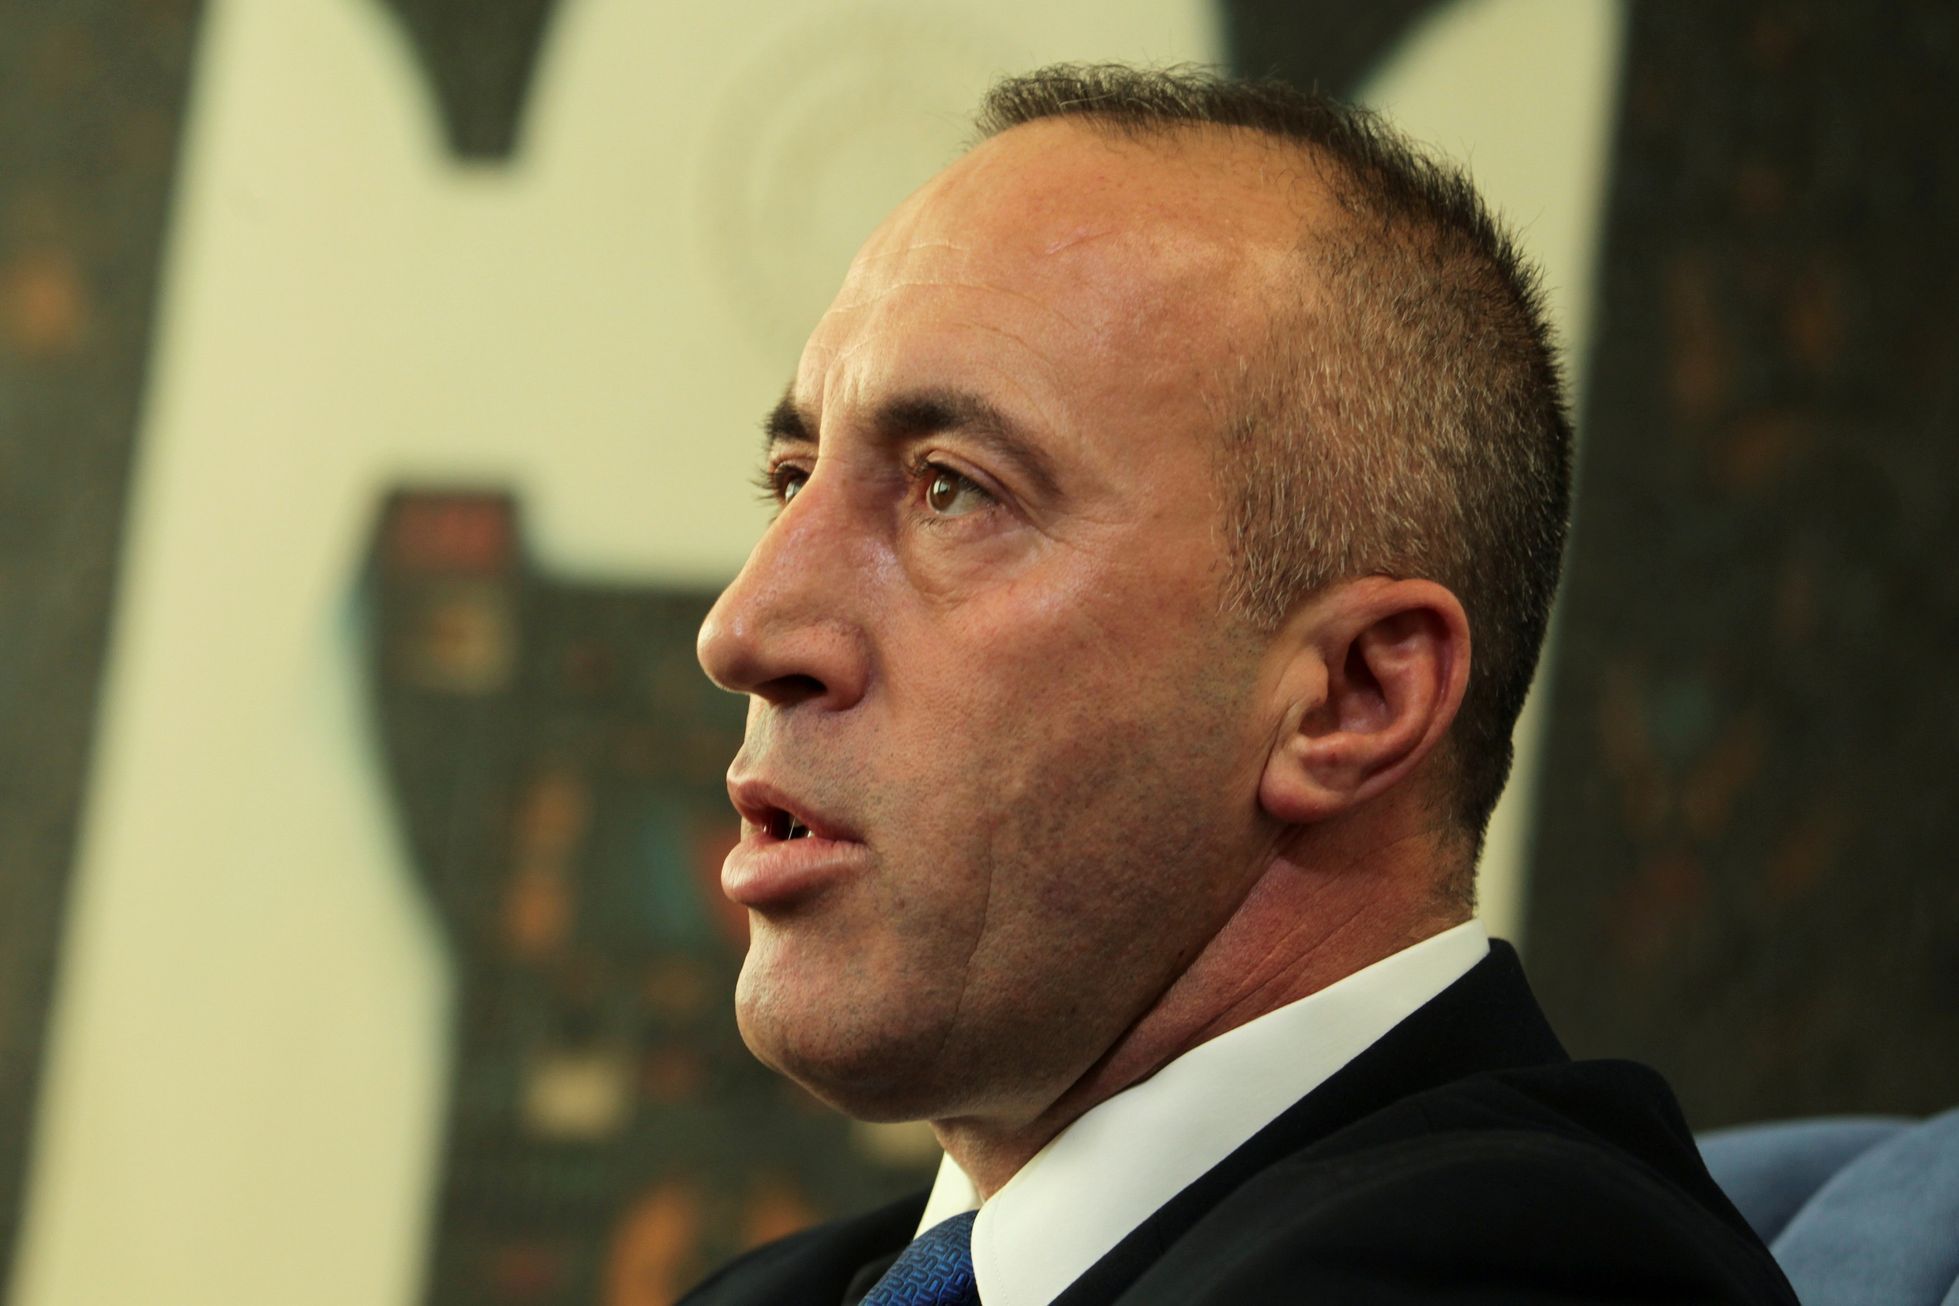 Ramush Haradinaj.